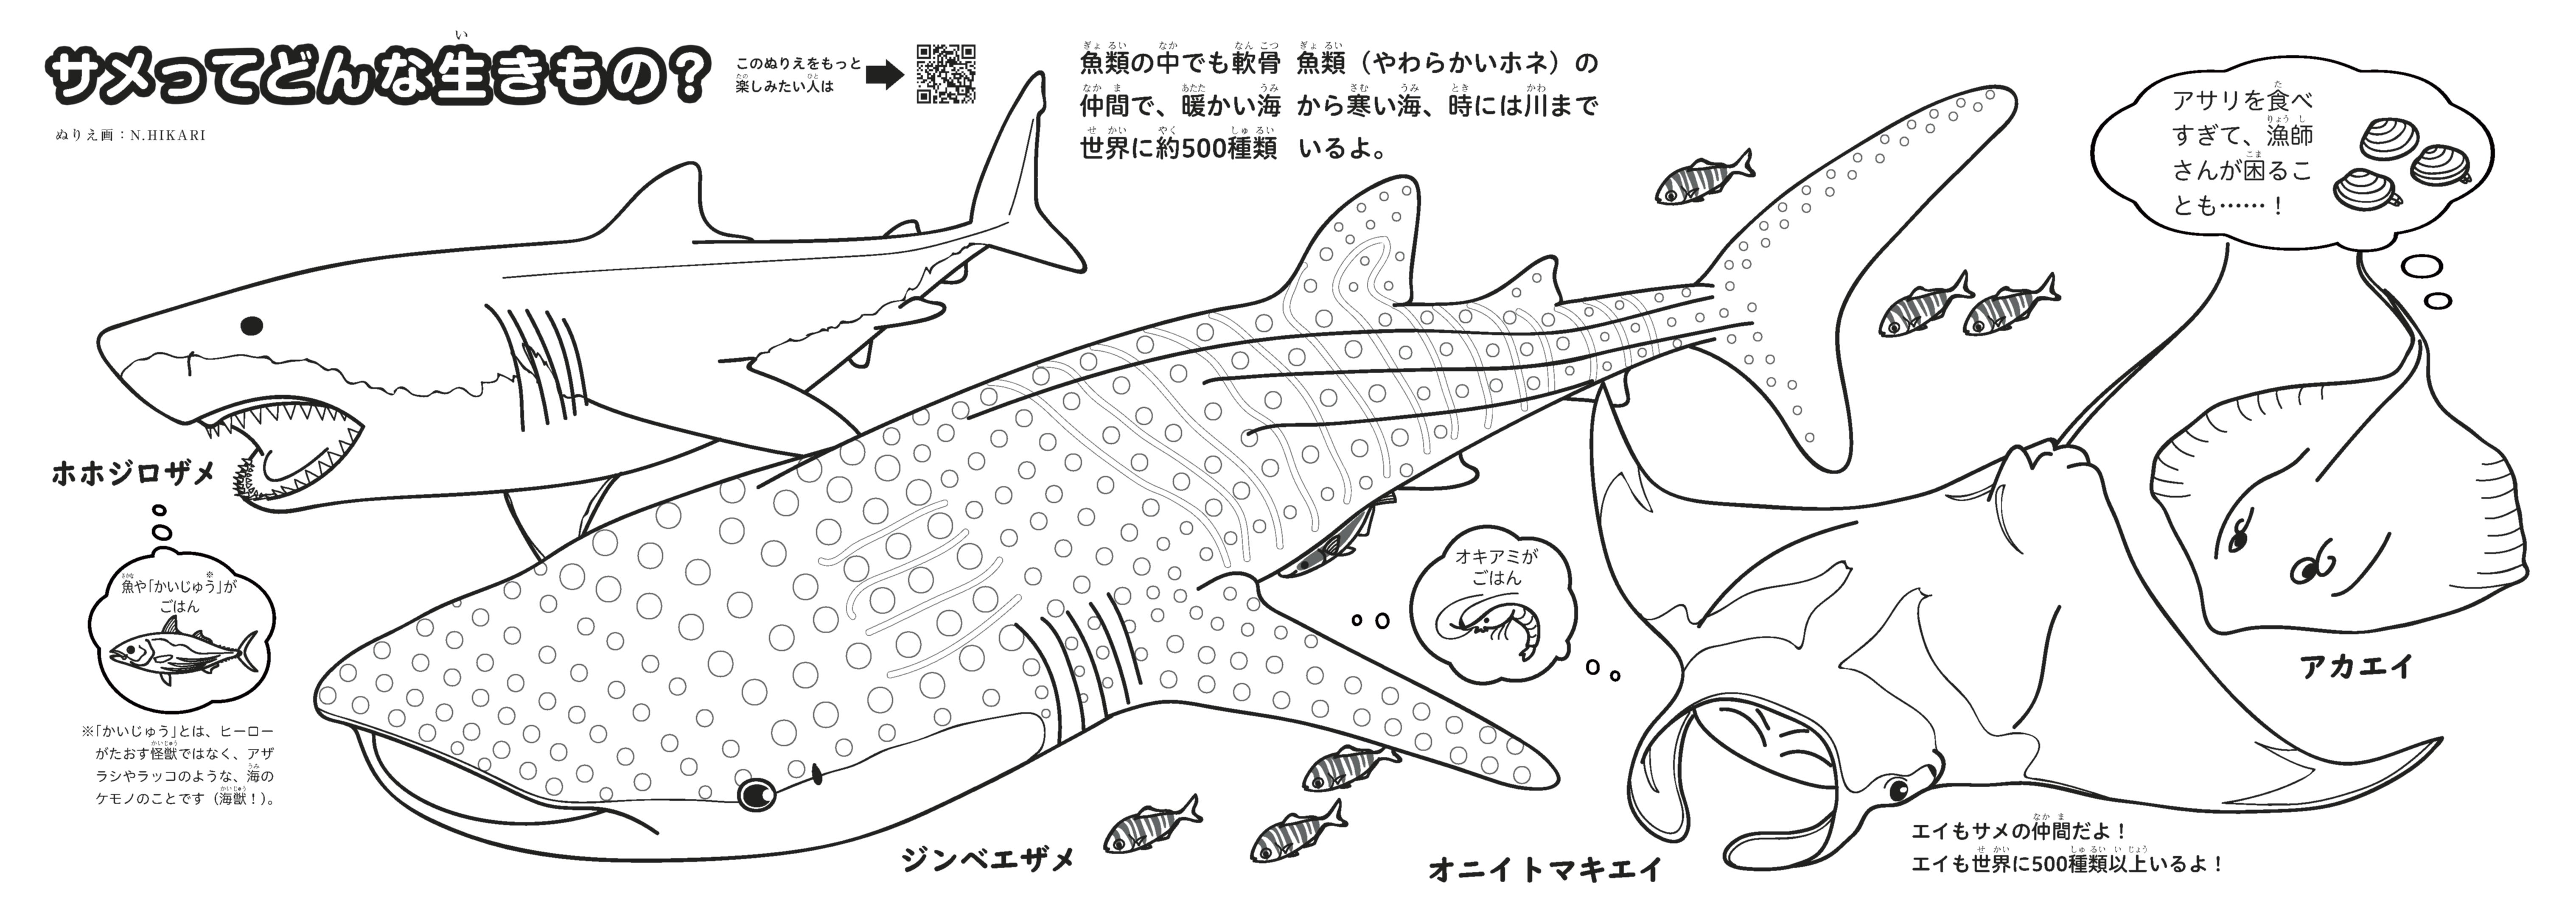 サメぬりえ 完成しました 魚食普及推進センター 一般社団法人 大日本水産会